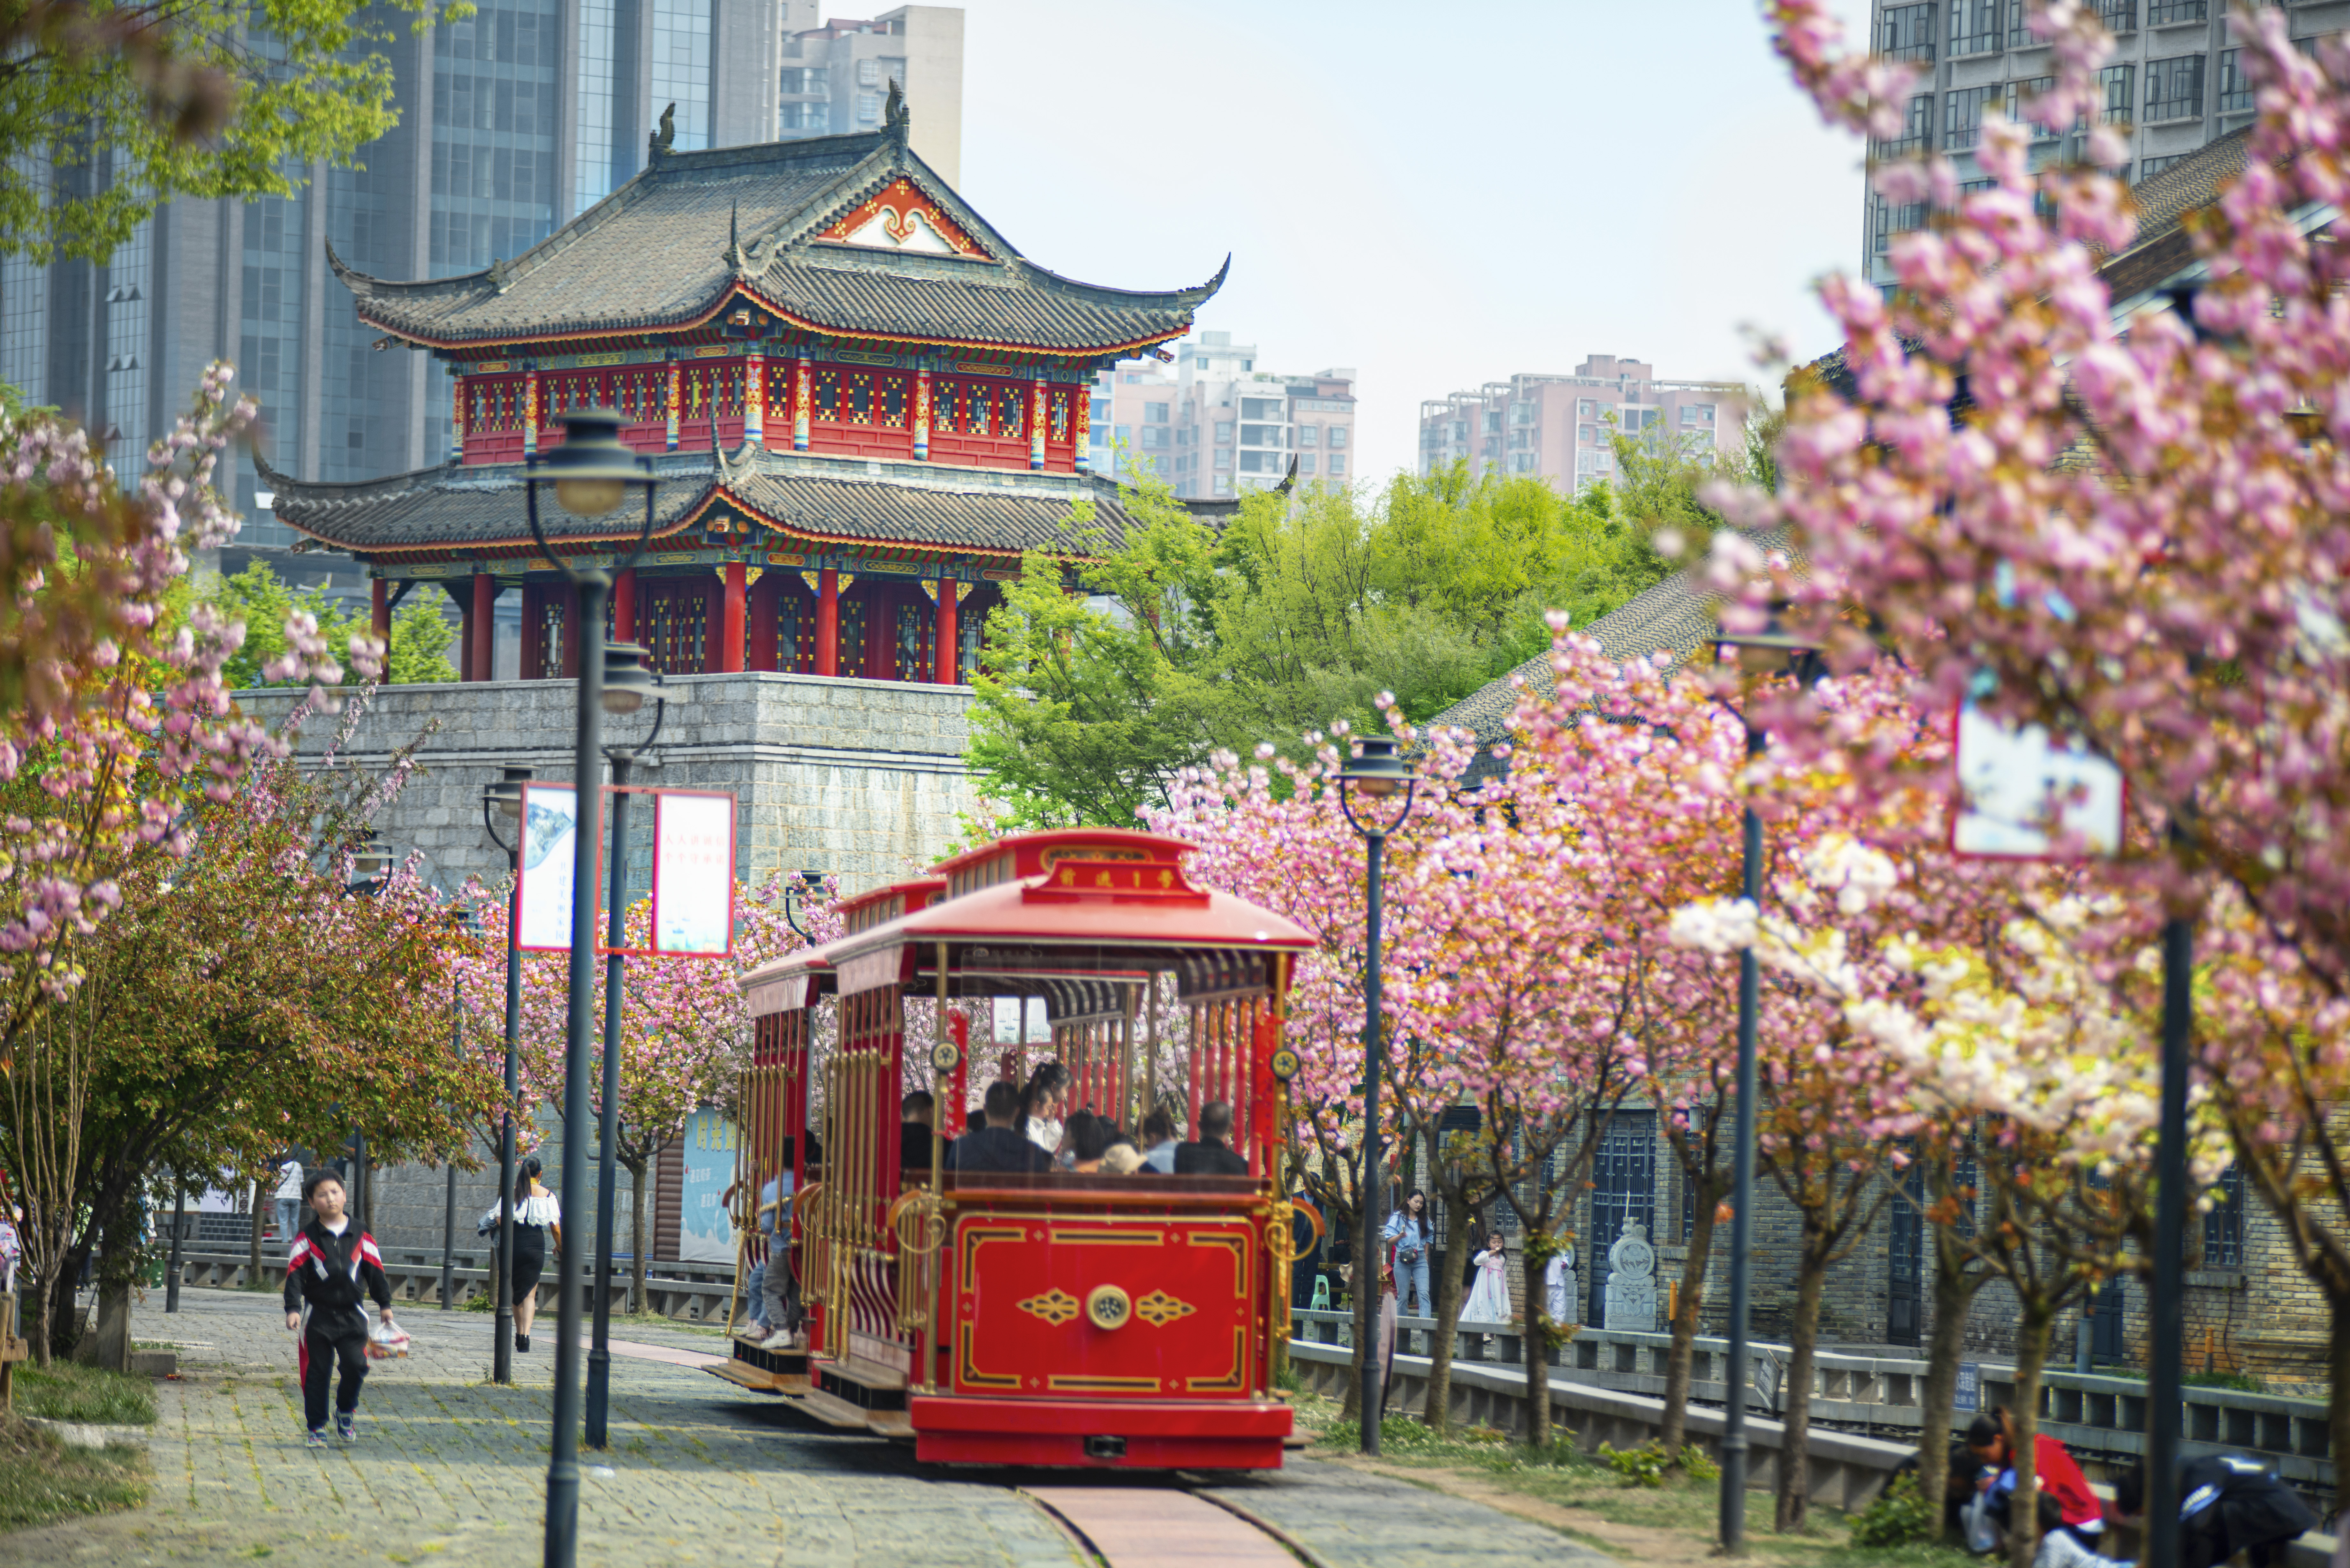 水城古镇樱花绽放，游客乘坐观光小火车游览美景。何育勇 摄